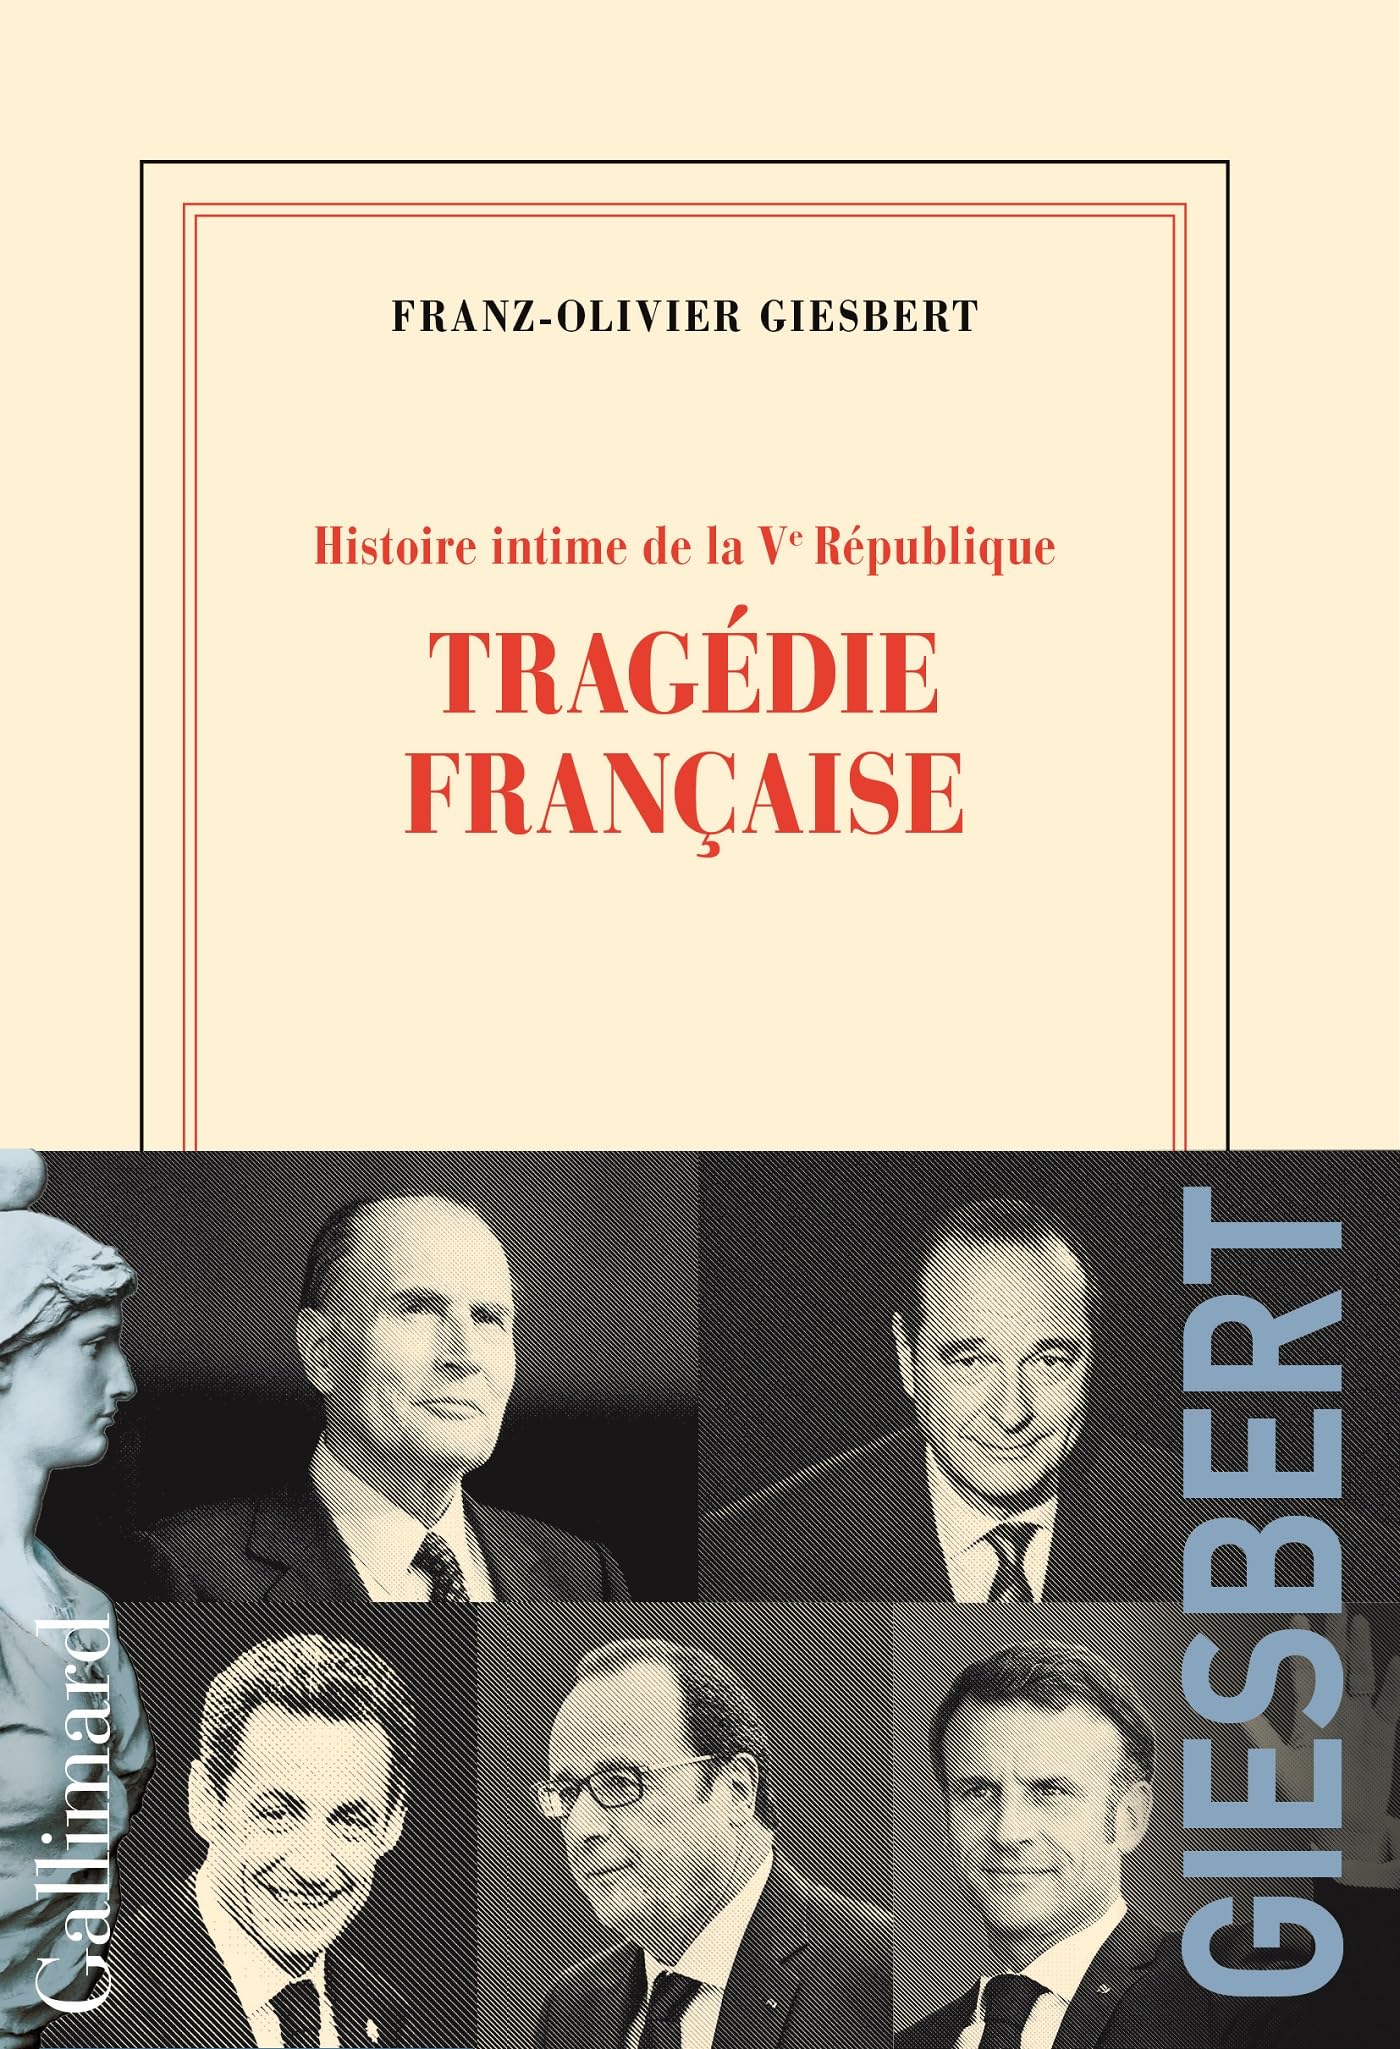 Histoire intime de la Ve République (Tome 3) - Tragédie française (French Edition)